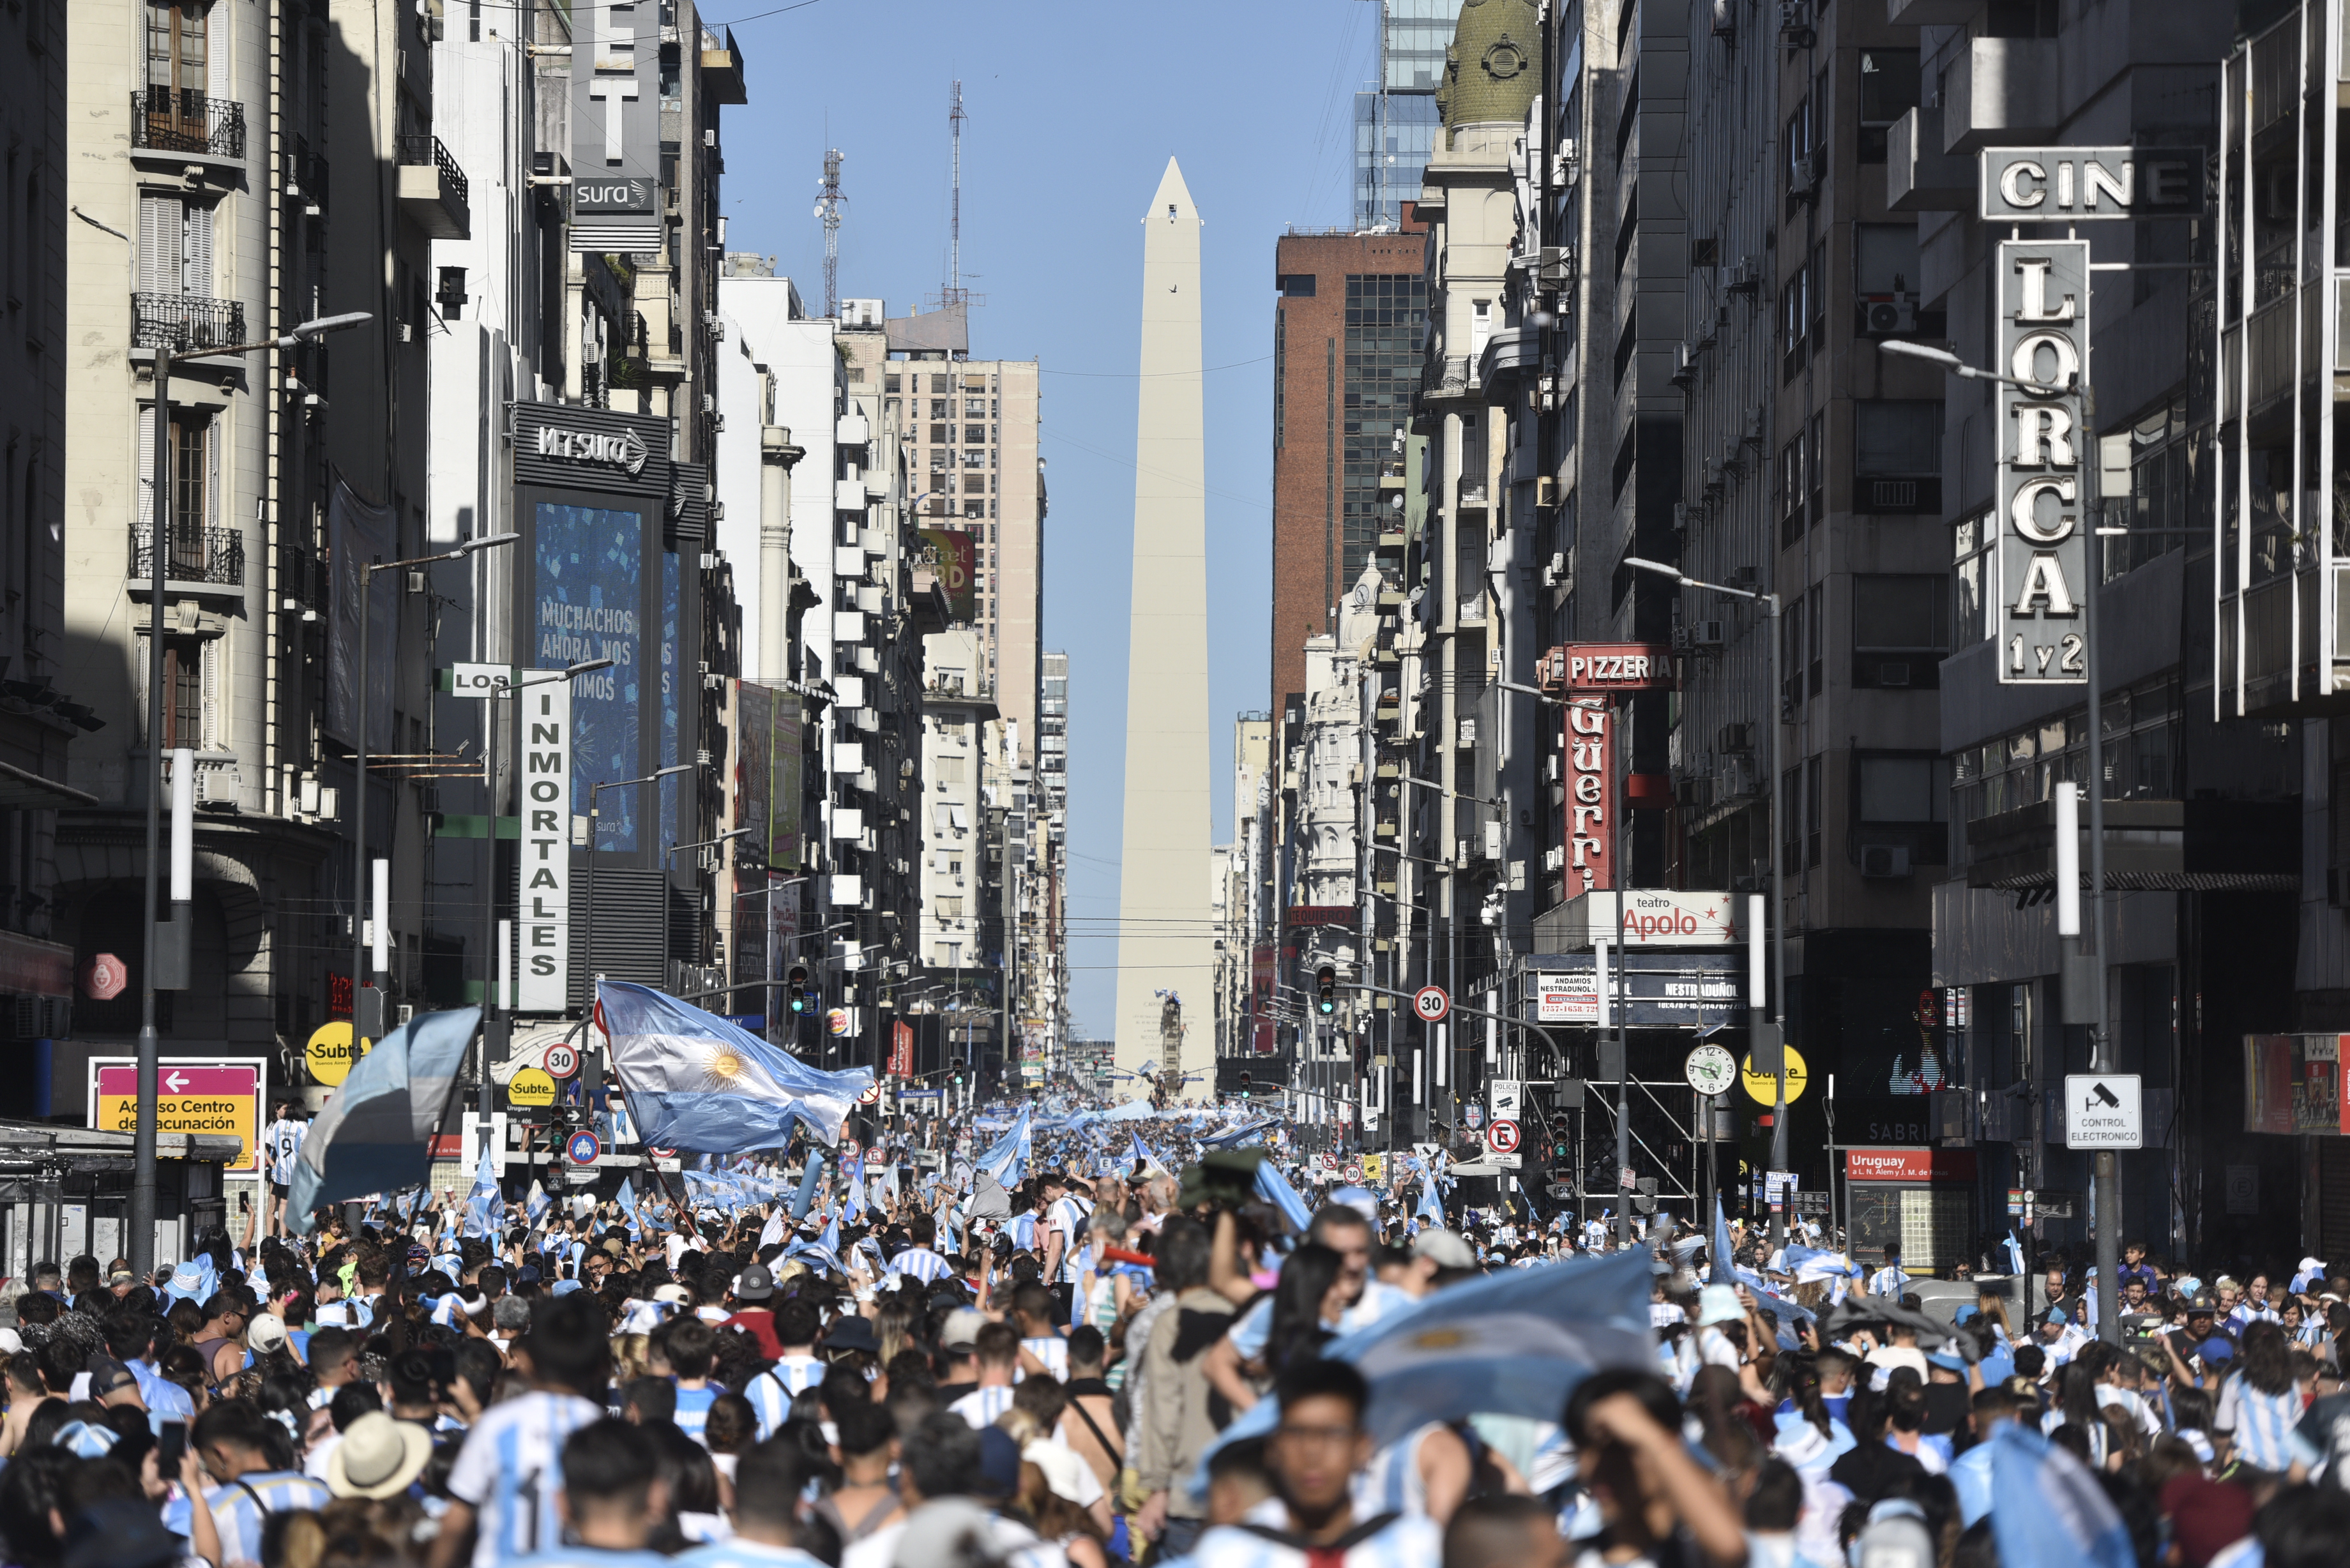 Argentina team celebrates at the obelisk (Adrien Escander).